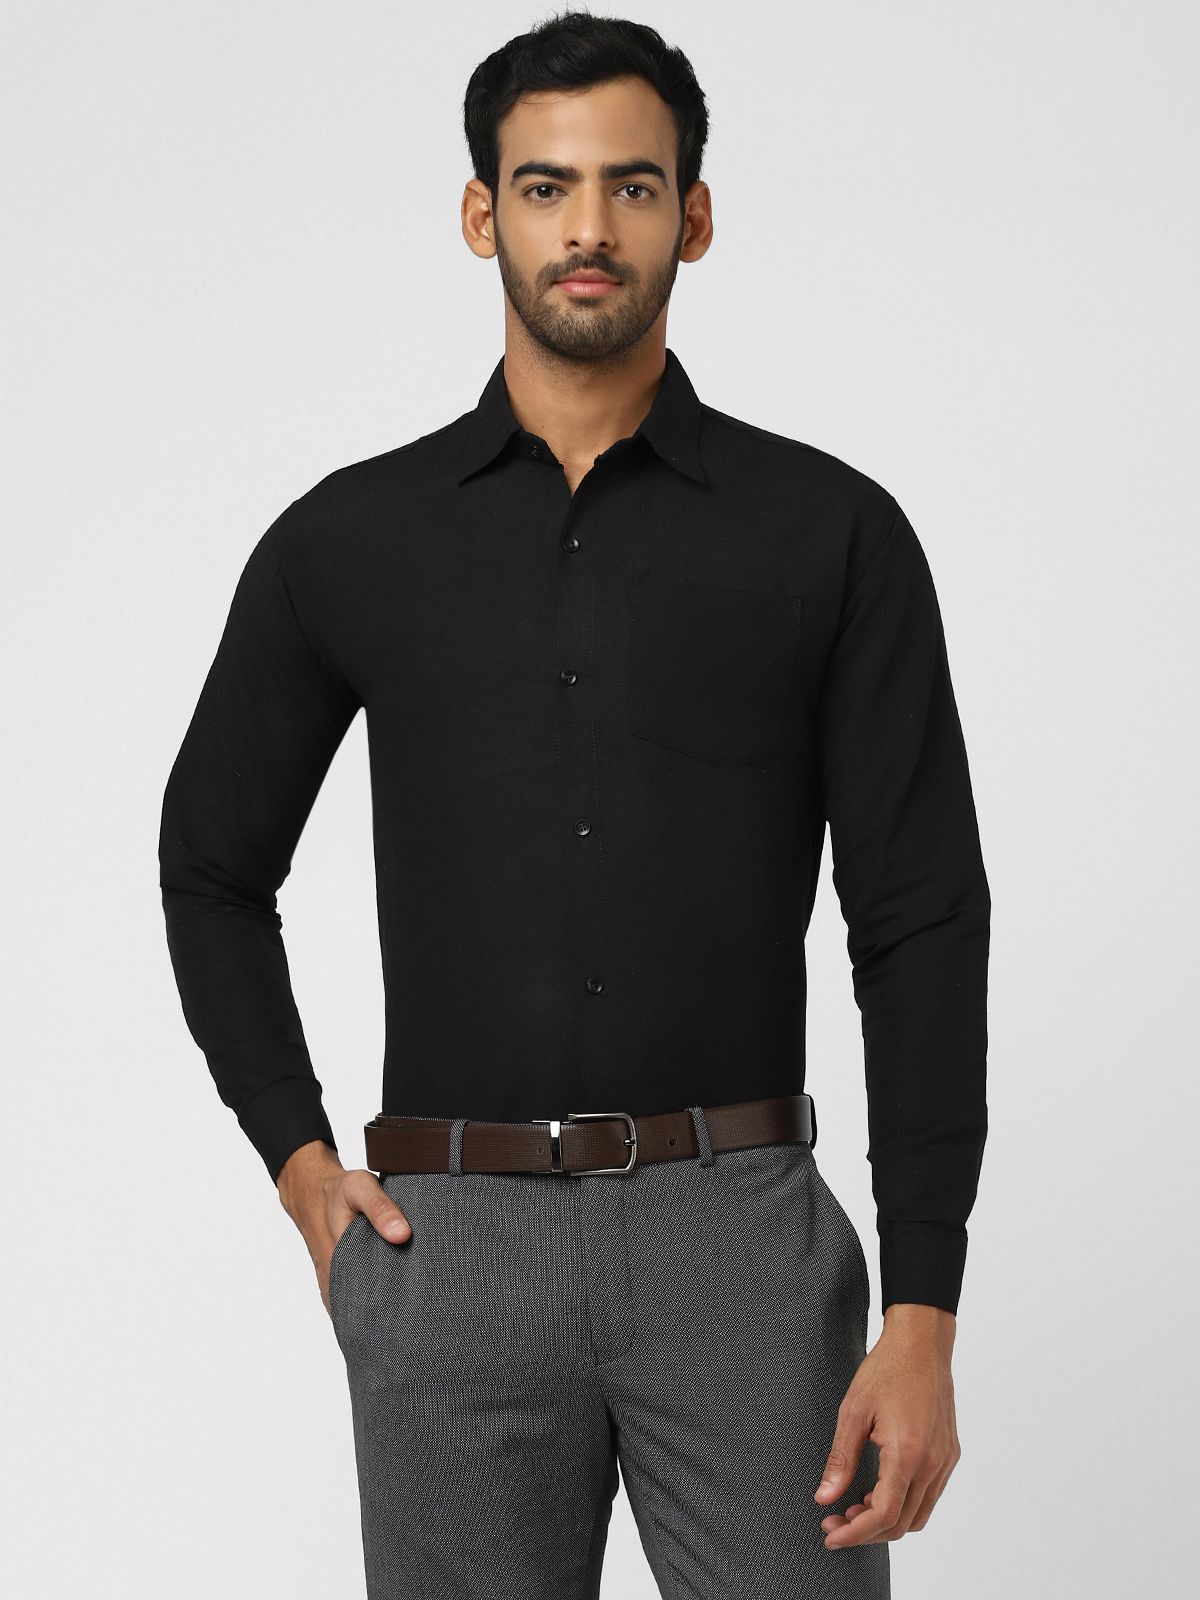     			DESHBANDHU DBK - Black Cotton Regular Fit Men's Formal Shirt ( Pack of 1 )